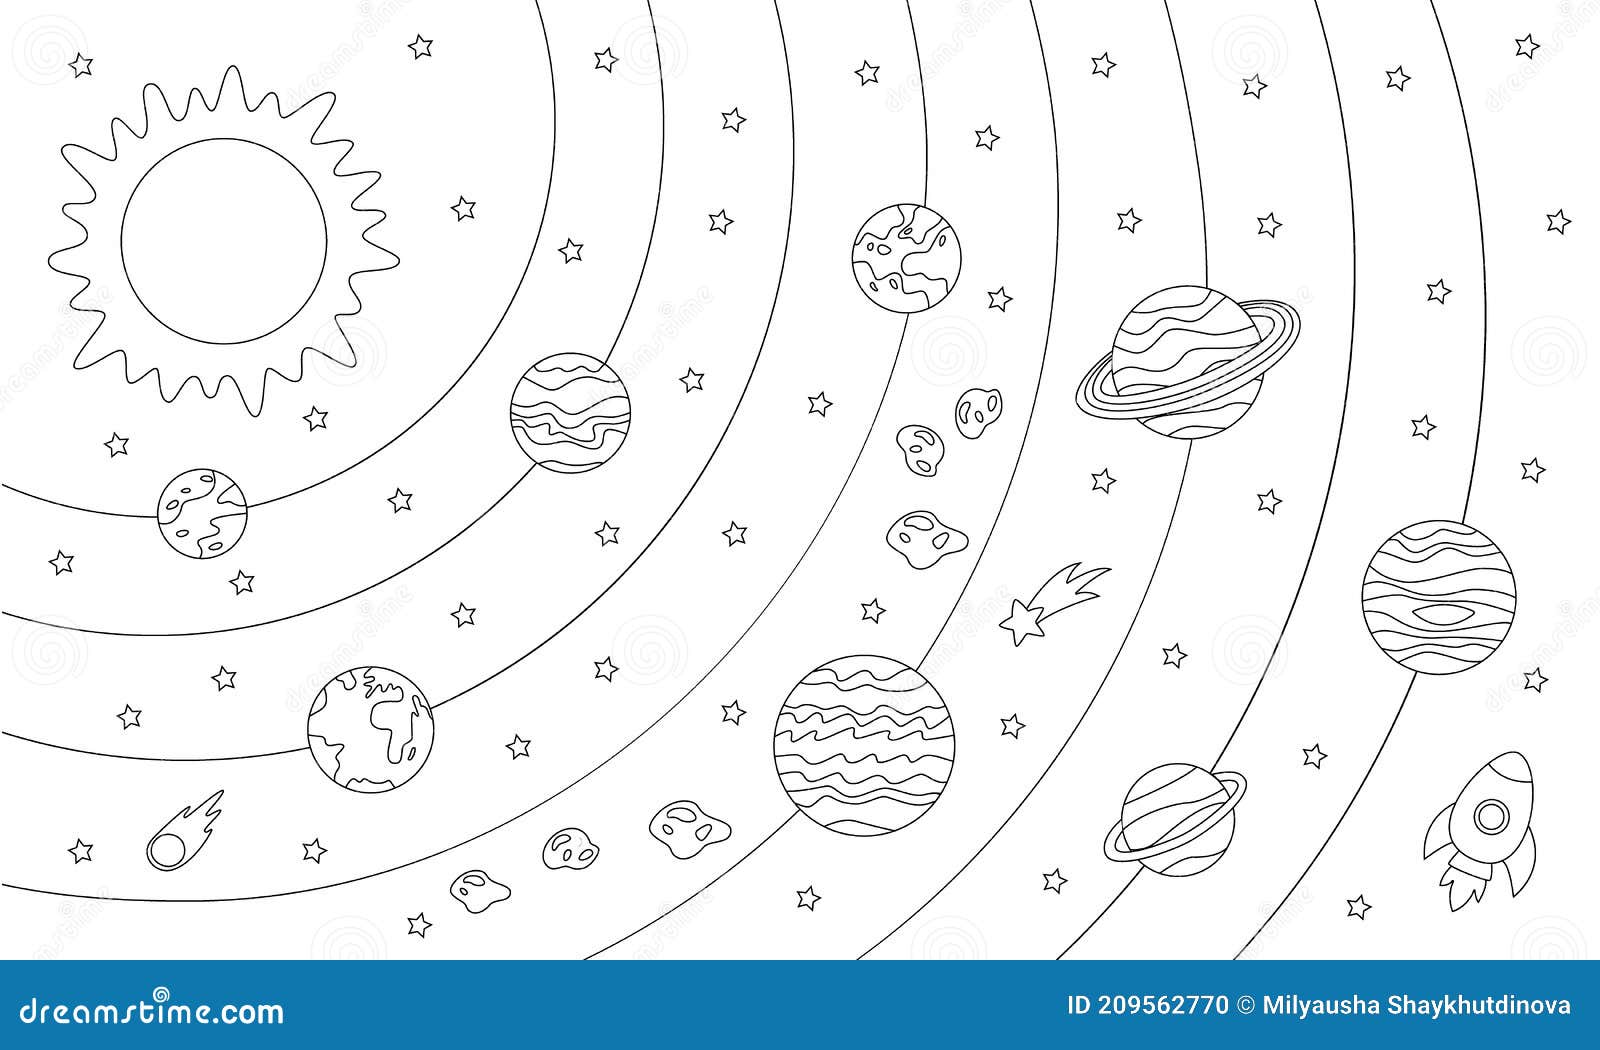 EL SISTEMA SOLAR - Imagenes Educativas  Sistema solar para colorear, Sistema  solar, Imagenes del sistema solar